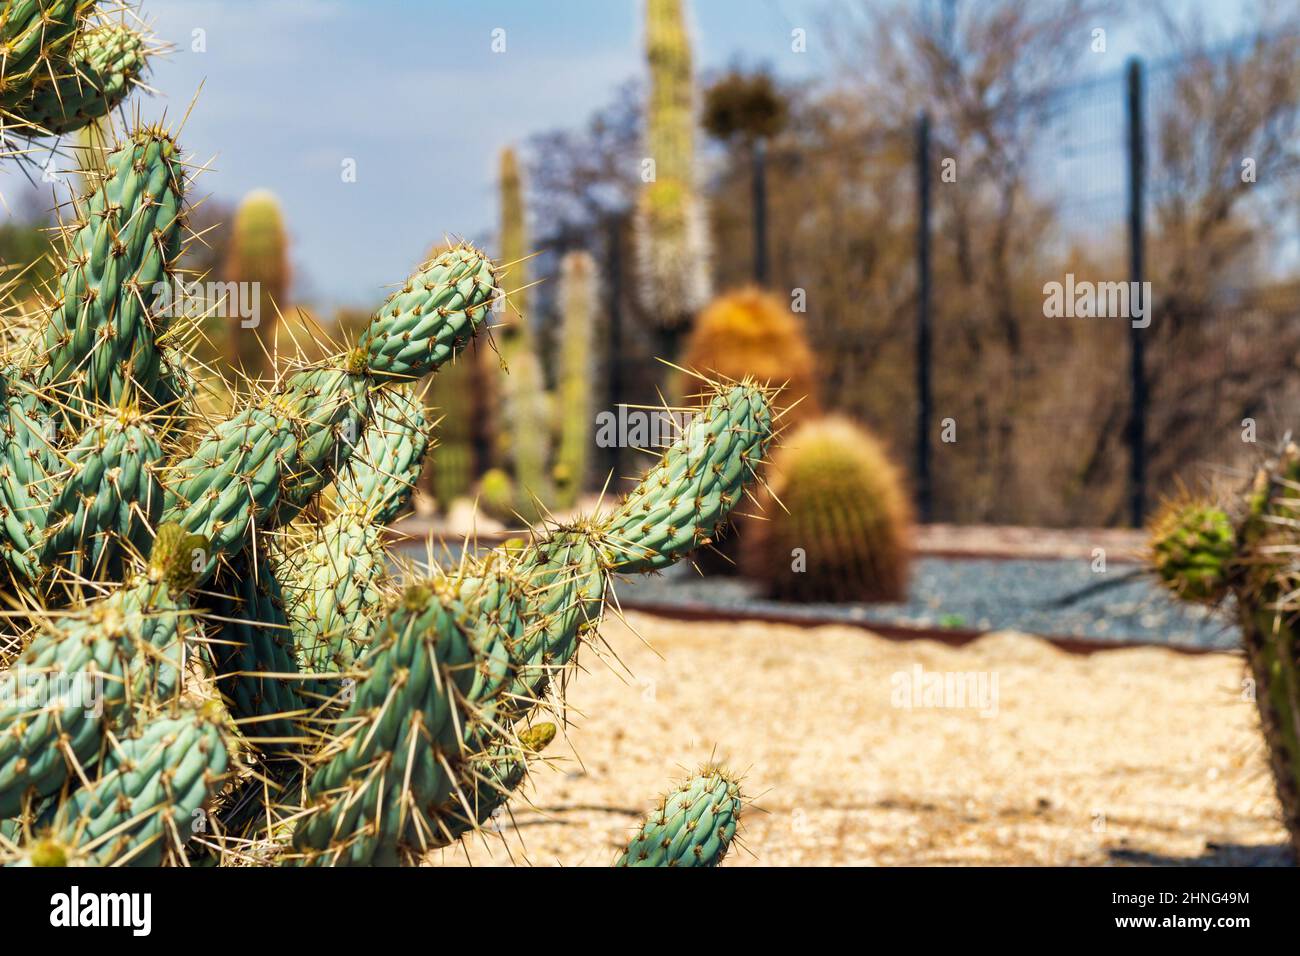 Feuilles de cactus épineuses sur fond flou au parc Quilapilun, au Chili. Banque D'Images